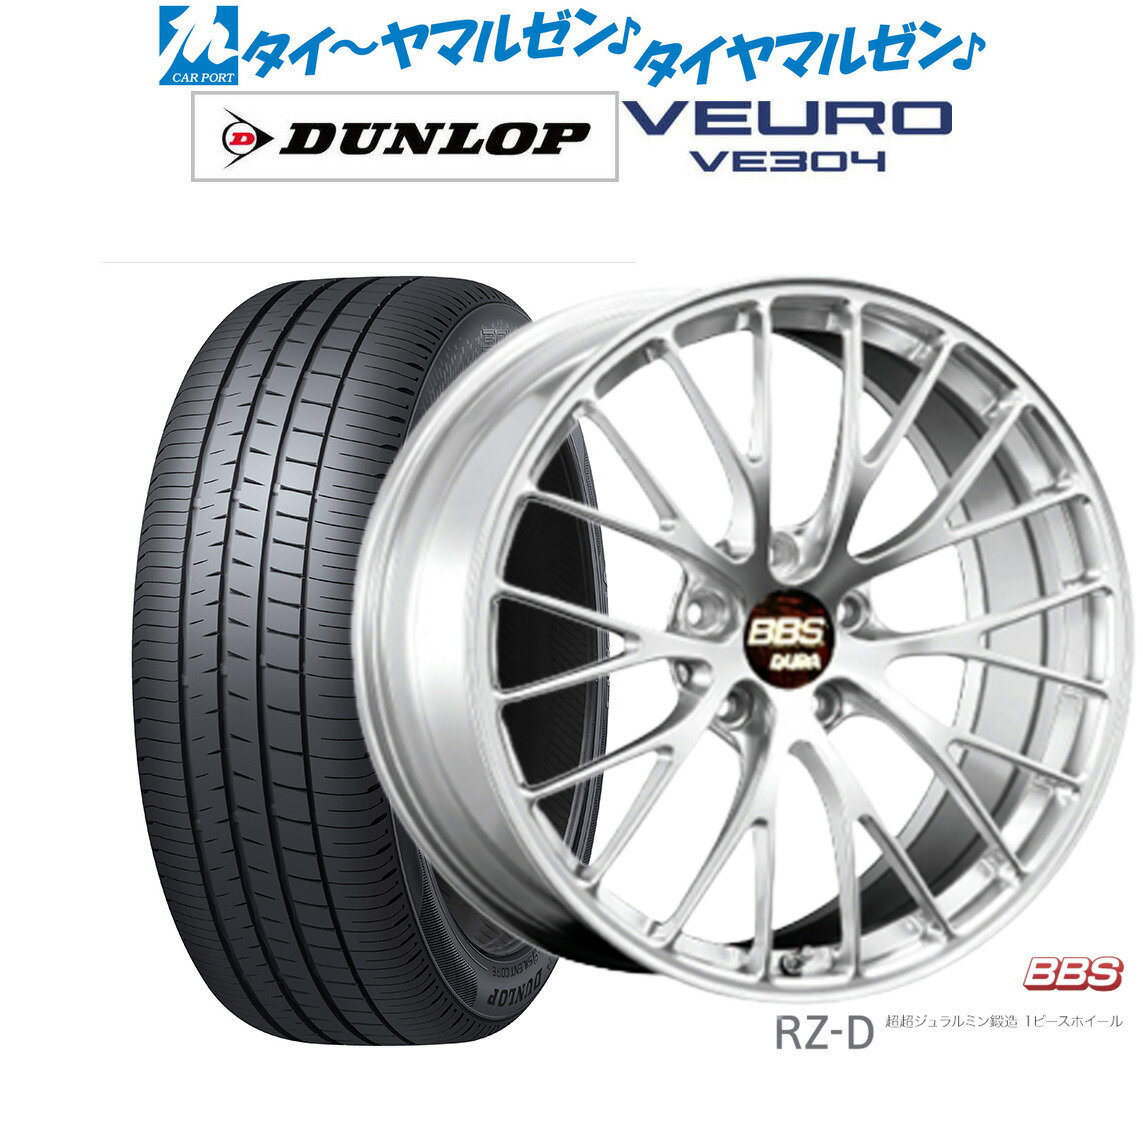 新品 サマータイヤ ホイール4本セットBBS JAPAN RZ-D20インチ 8.5Jダンロップ VEURO ビューロ VE304245/35R20